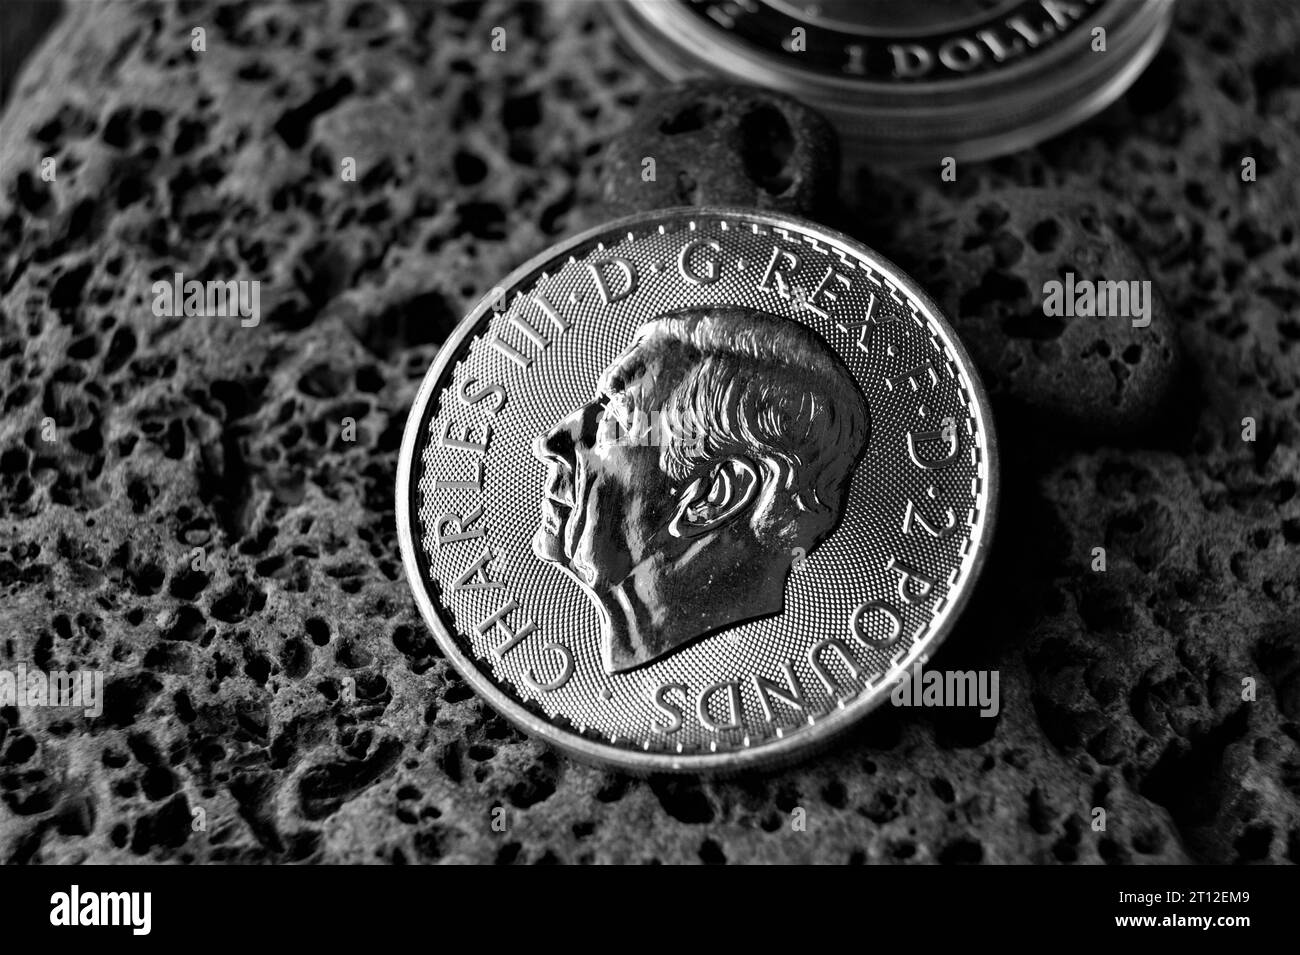 Pièce d'argent 2 livres Roi Charles III 2023. Investissements et numismatique. Banque D'Images